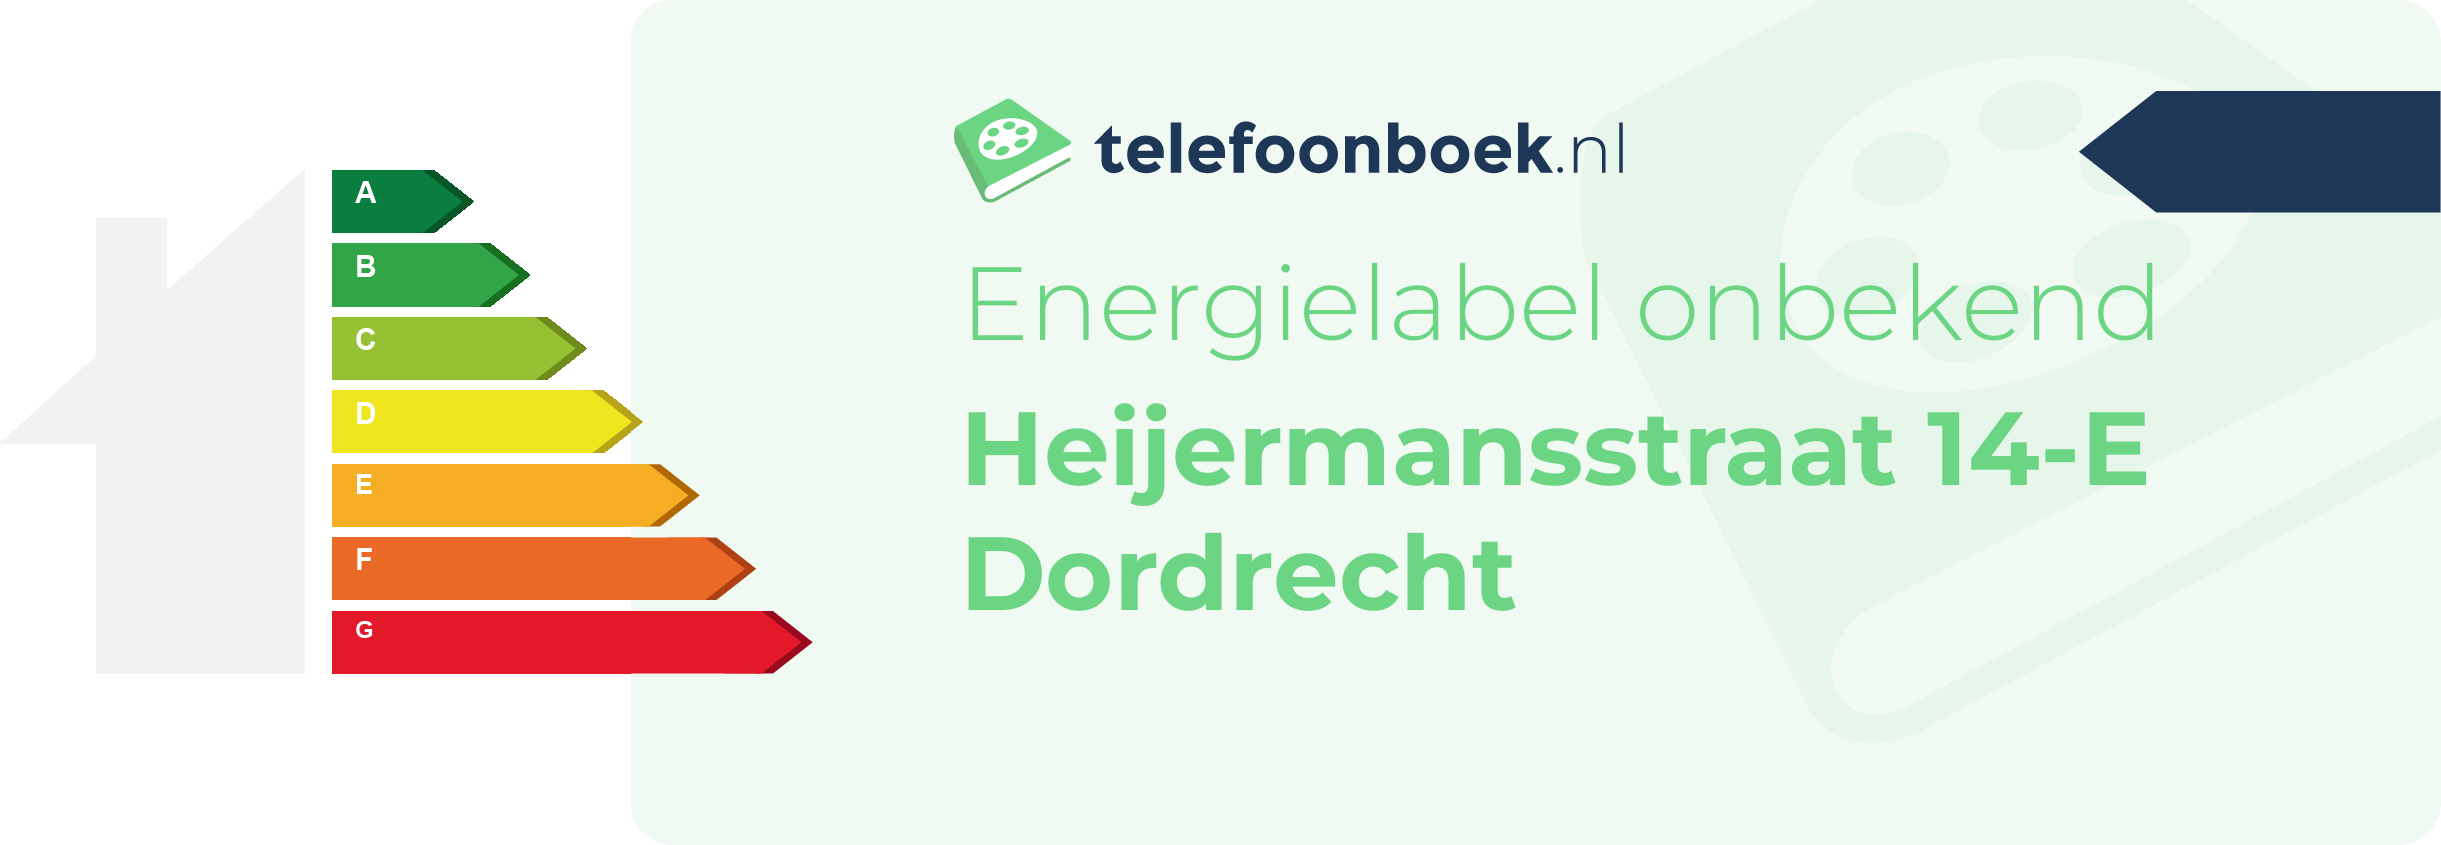 Energielabel Heijermansstraat 14-E Dordrecht